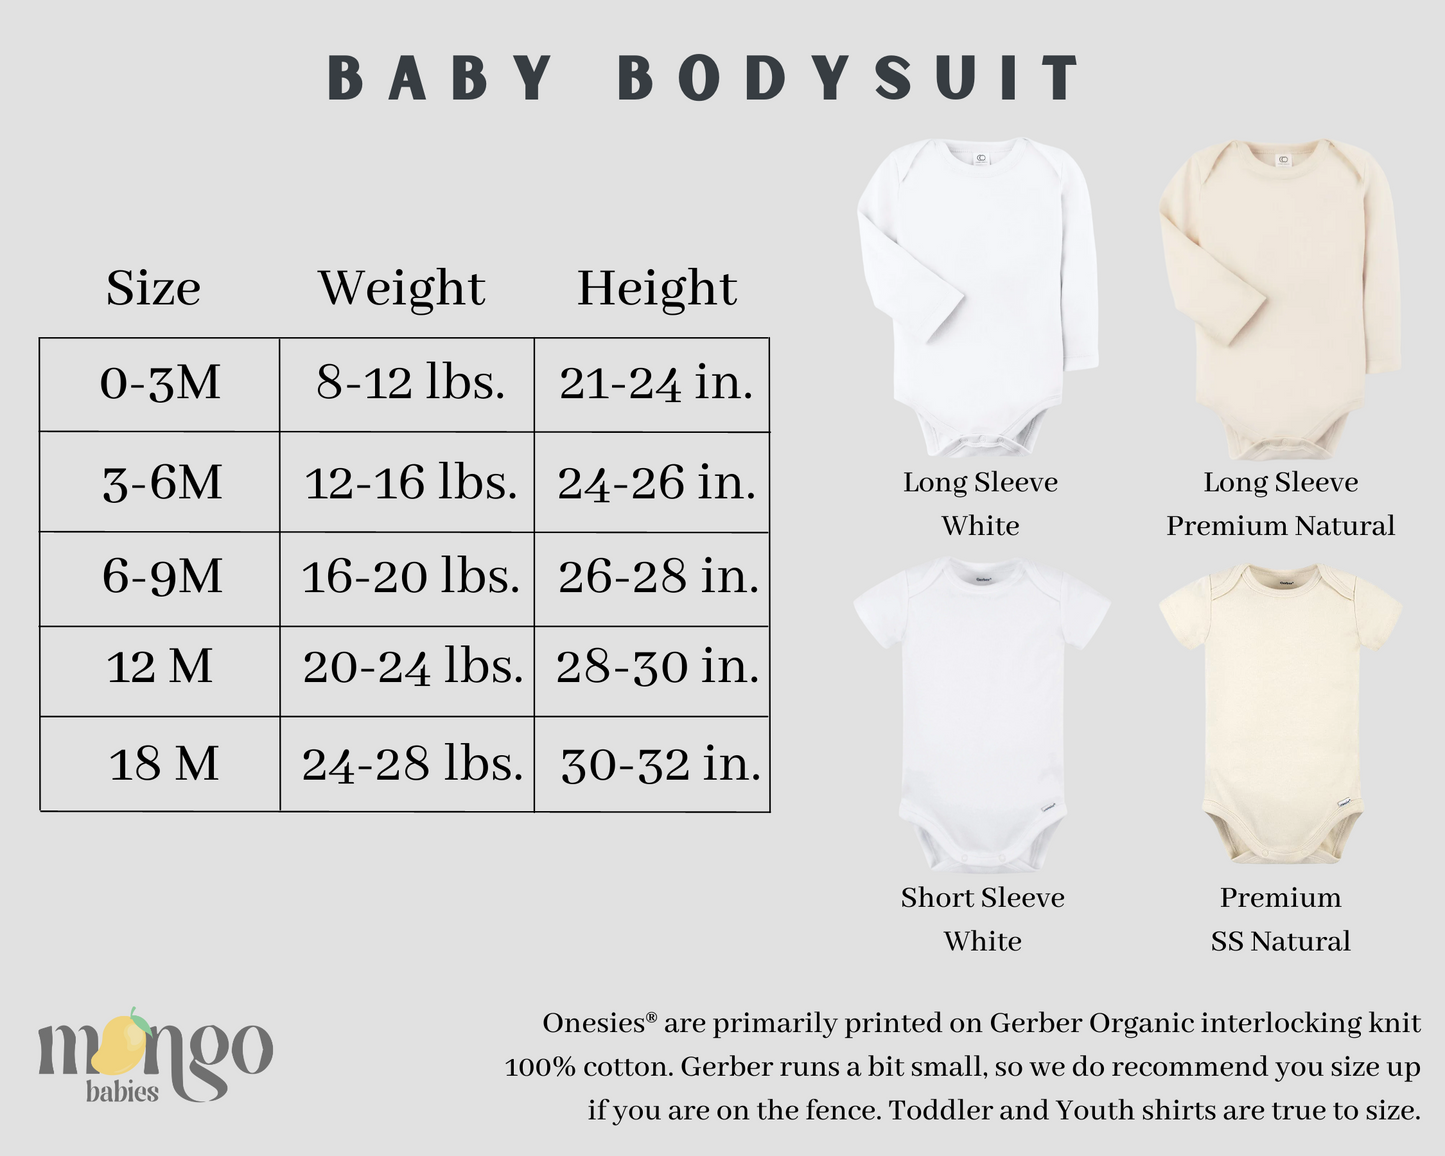 Iowa Baby Onesie® Iowa State Shirt for Kids Tshirt Iowa Bodysuit for Baby Gift